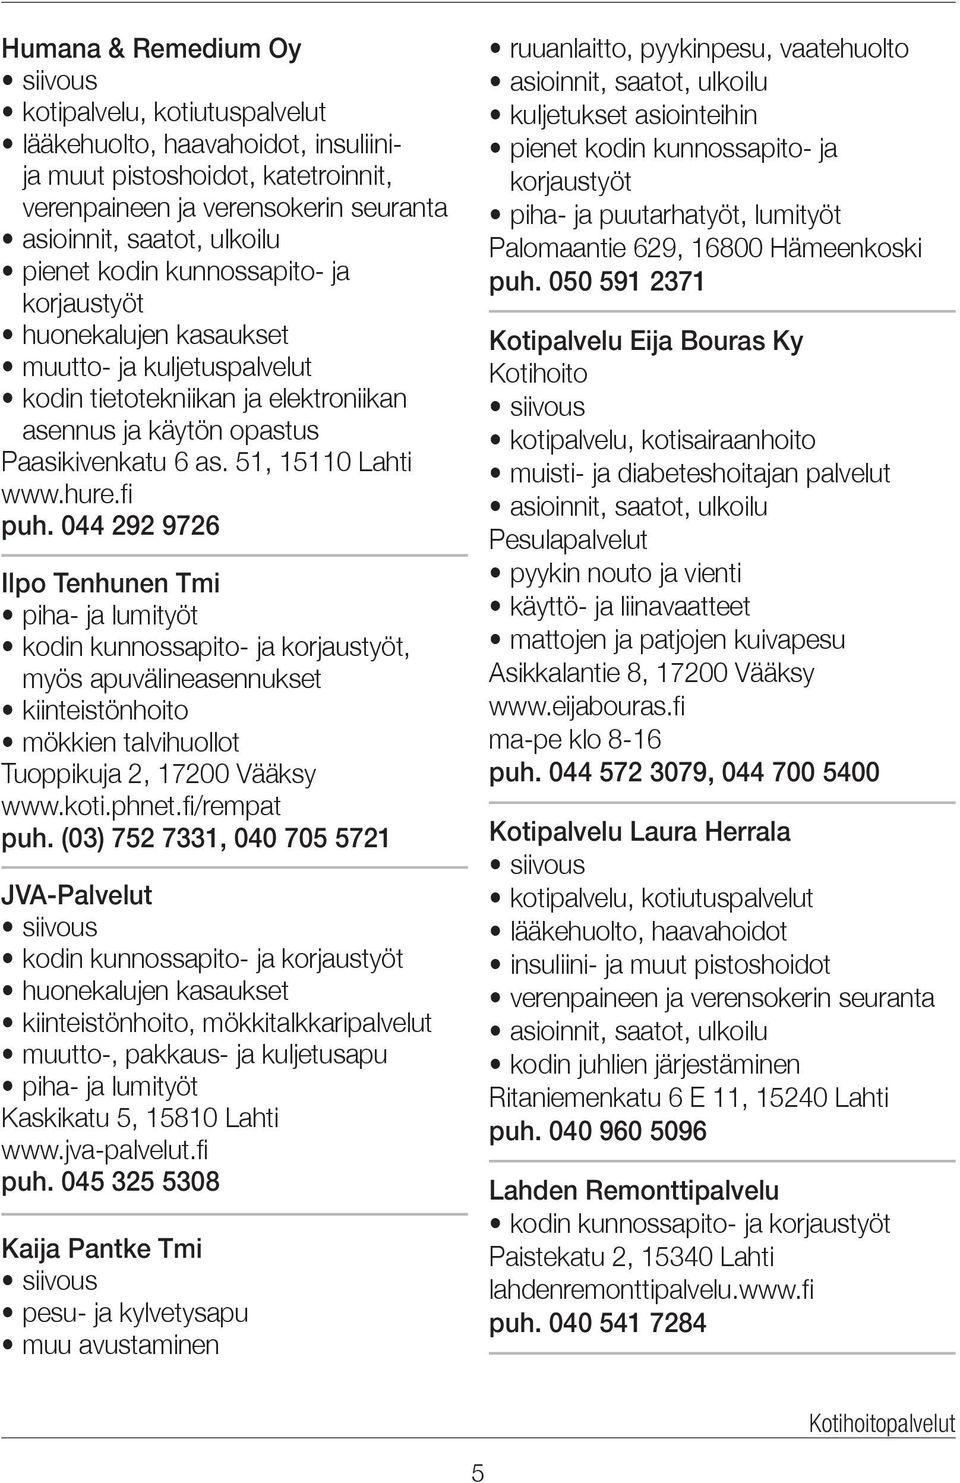 hure.fi puh. 044 292 9726 Ilpo Tenhunen Tmi piha- ja lumityöt kodin kunnossapito- ja korjaustyöt, myös apuvälineasennukset kiinteistönhoito mökkien talvihuollot Tuoppikuja 2, 17200 Vääksy www.koti.